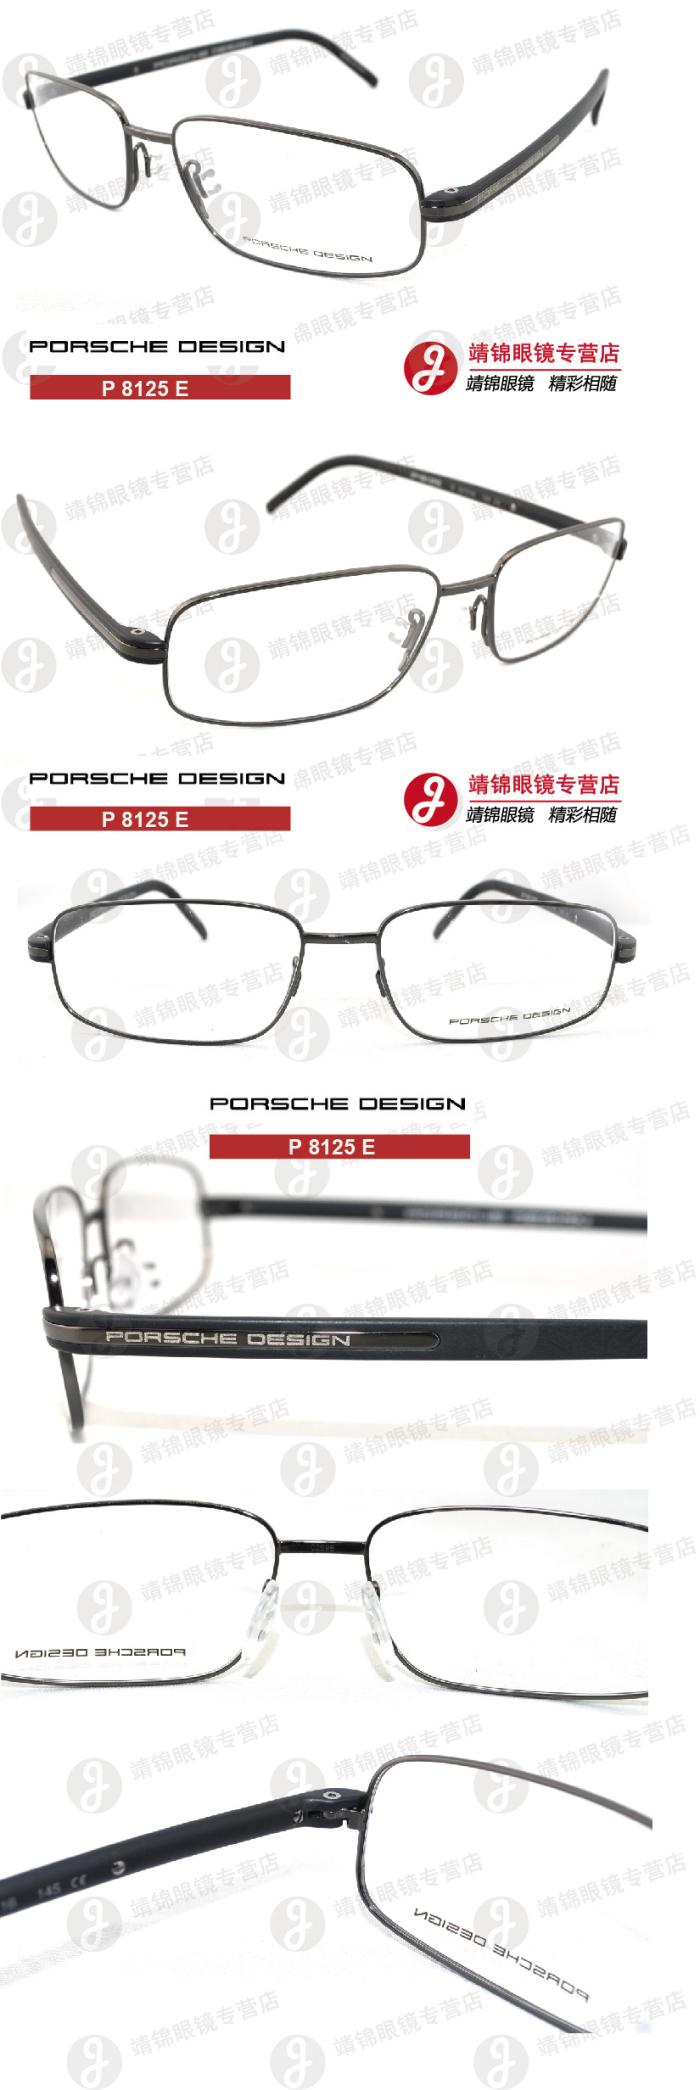 orsche Design 保时捷 P 8125 全框 光学眼镜架